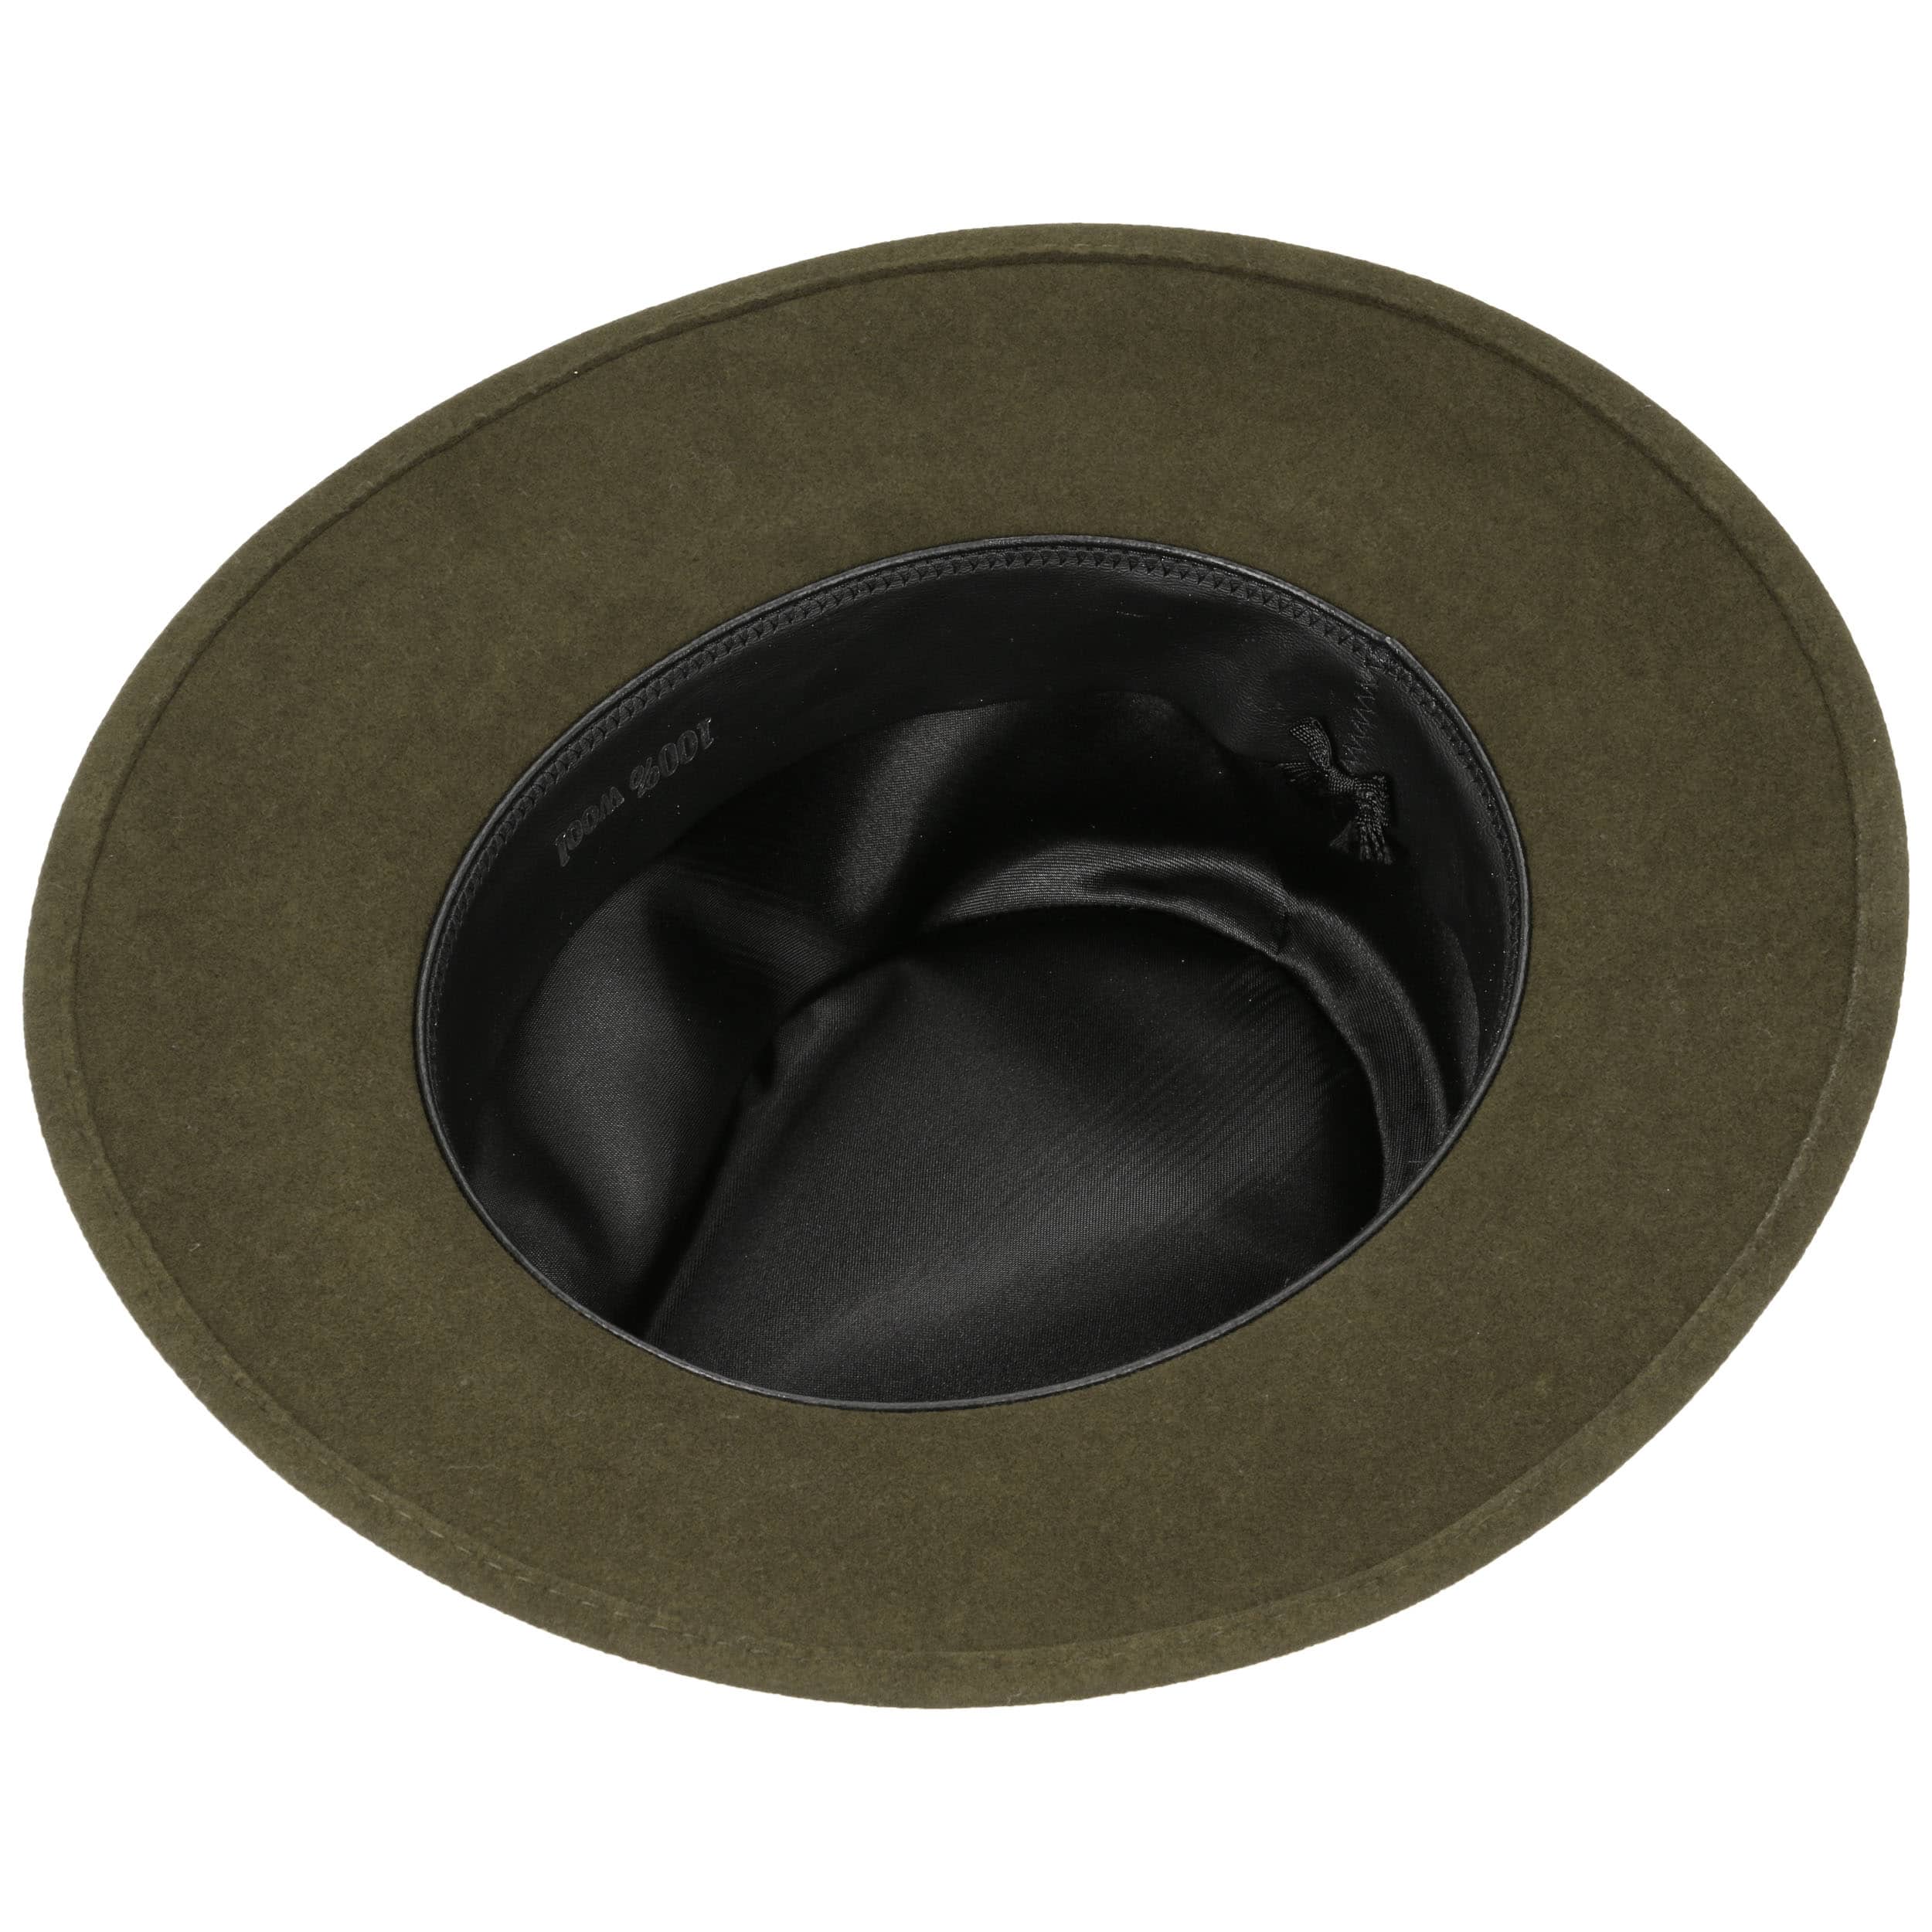 Edelweiß Bogart Wool Felt Hat by Lierys - 72,95